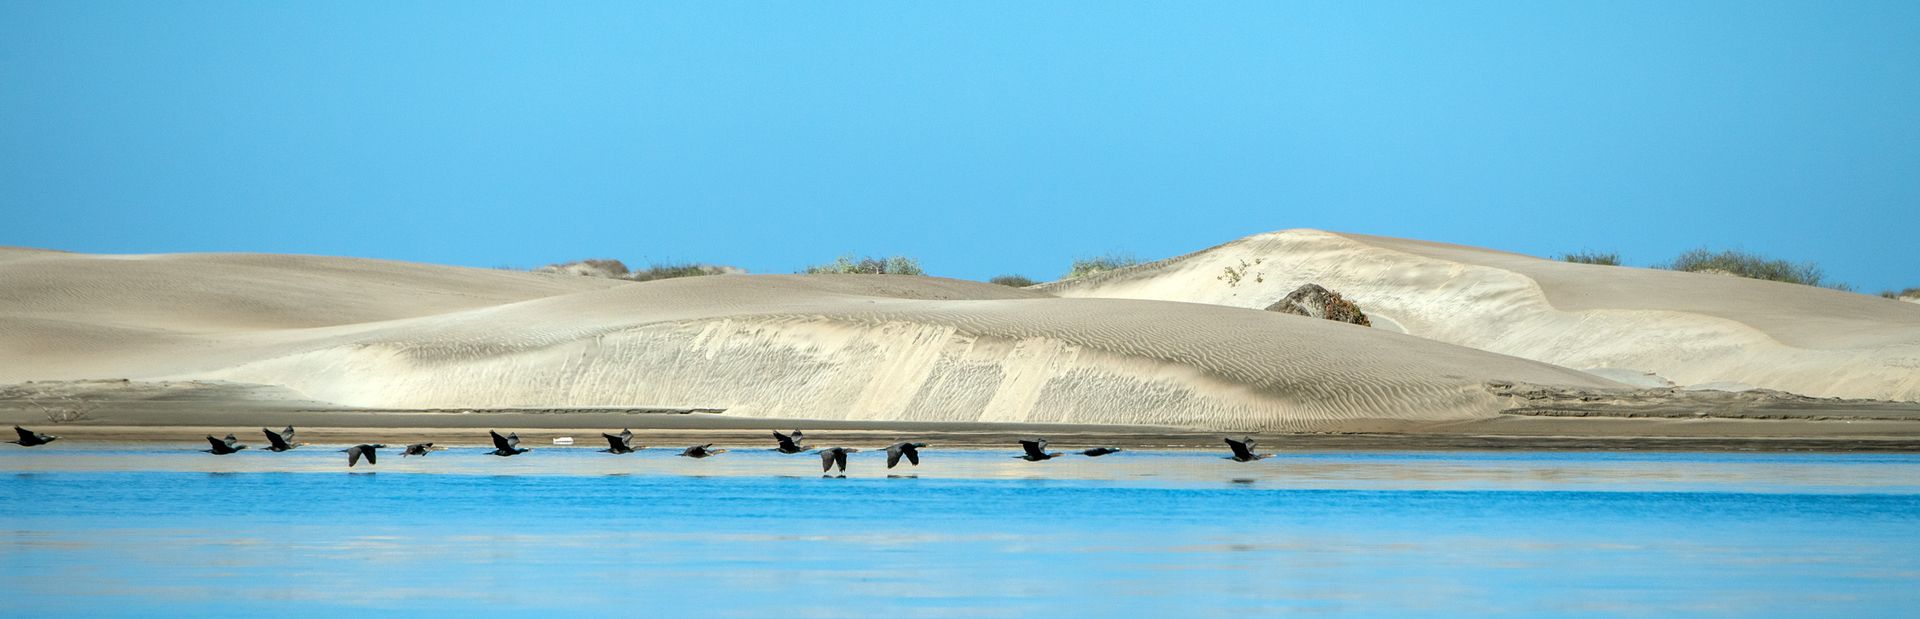 Magdalena Bay Image 1